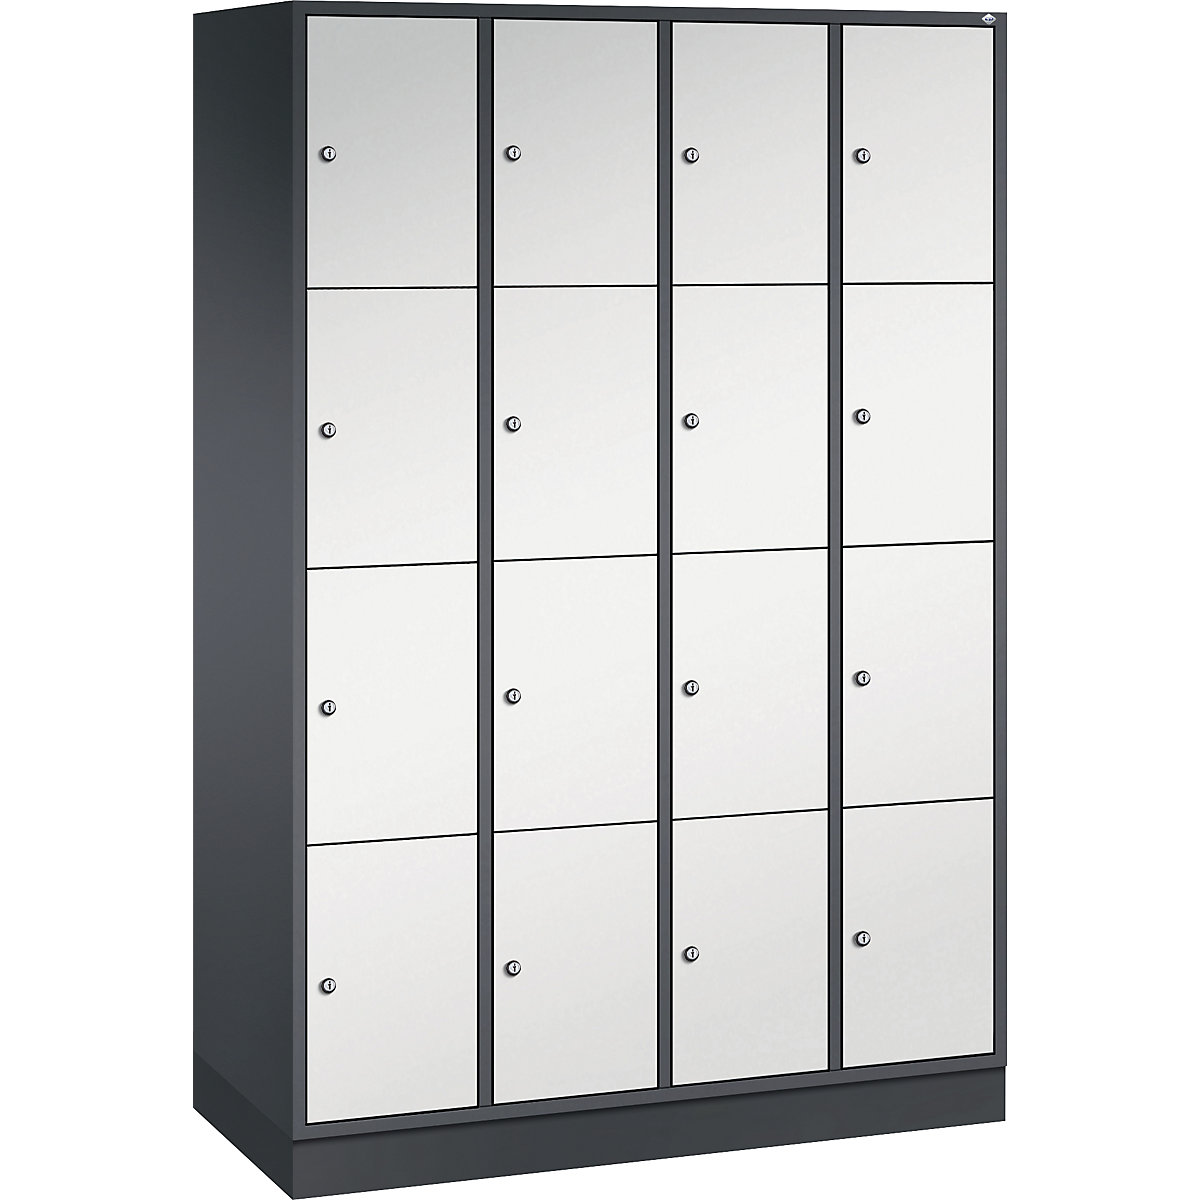 Vestiaire multicases en acier INTRO, casiers hauteur 435 mm – C+P, l x p 1220 x 500 mm, 16 casiers, corps gris noir, portes gris clair-3